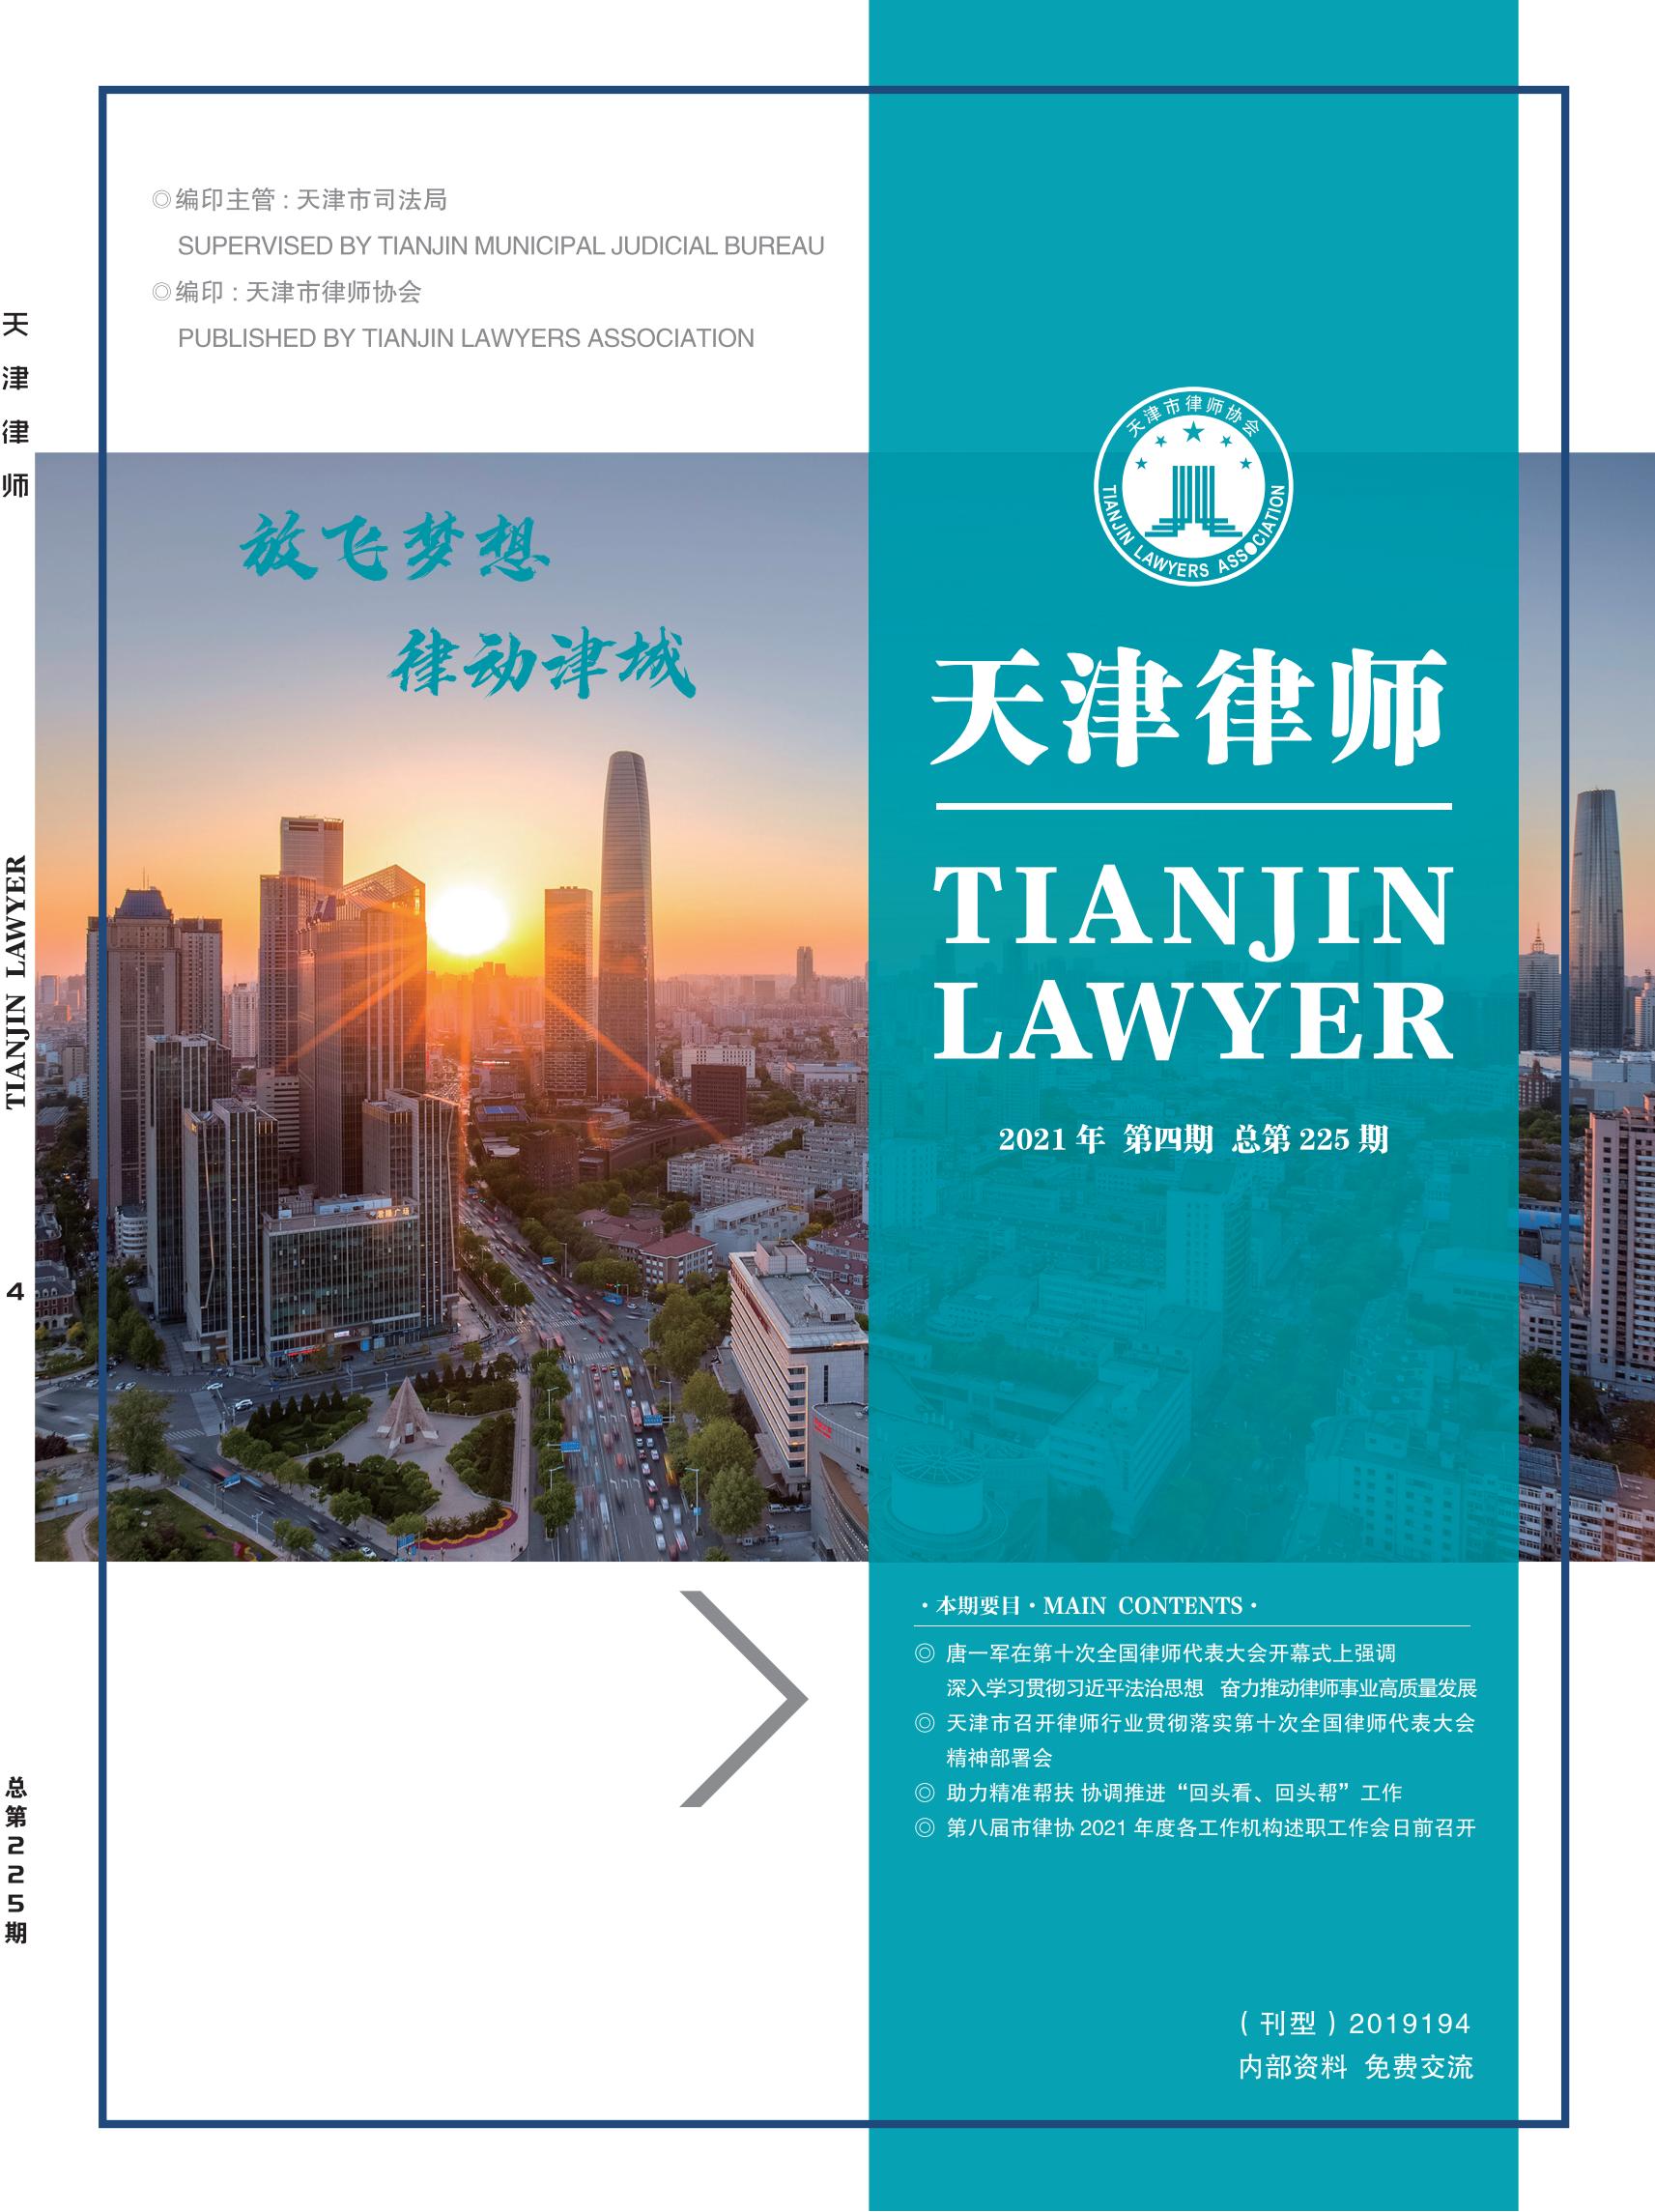 2021年第4期 天津律师封面图片上网.jpg